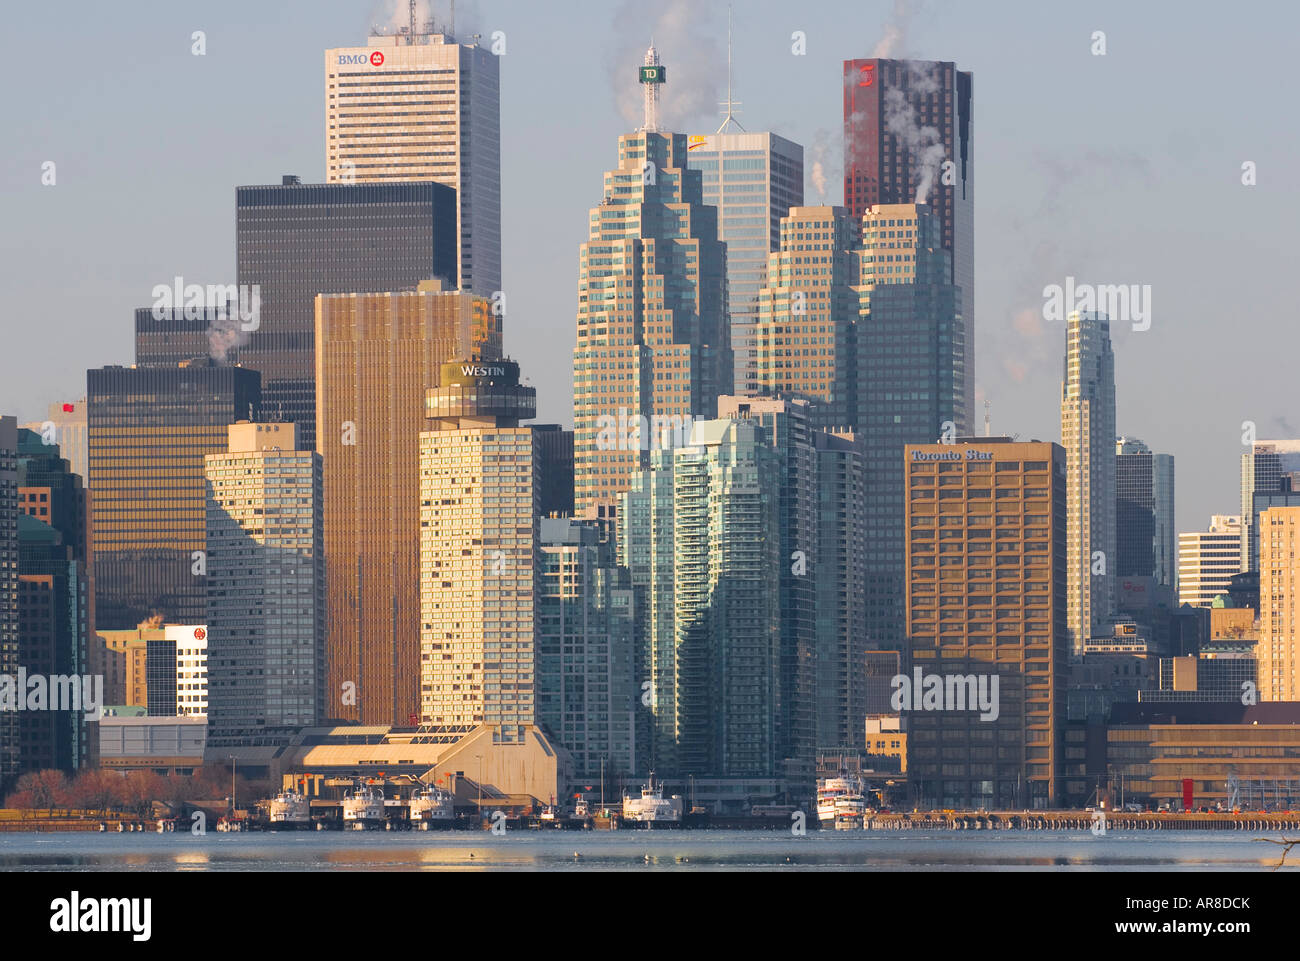 Le centre-ville de Toronto Skyline - Canada Banque D'Images